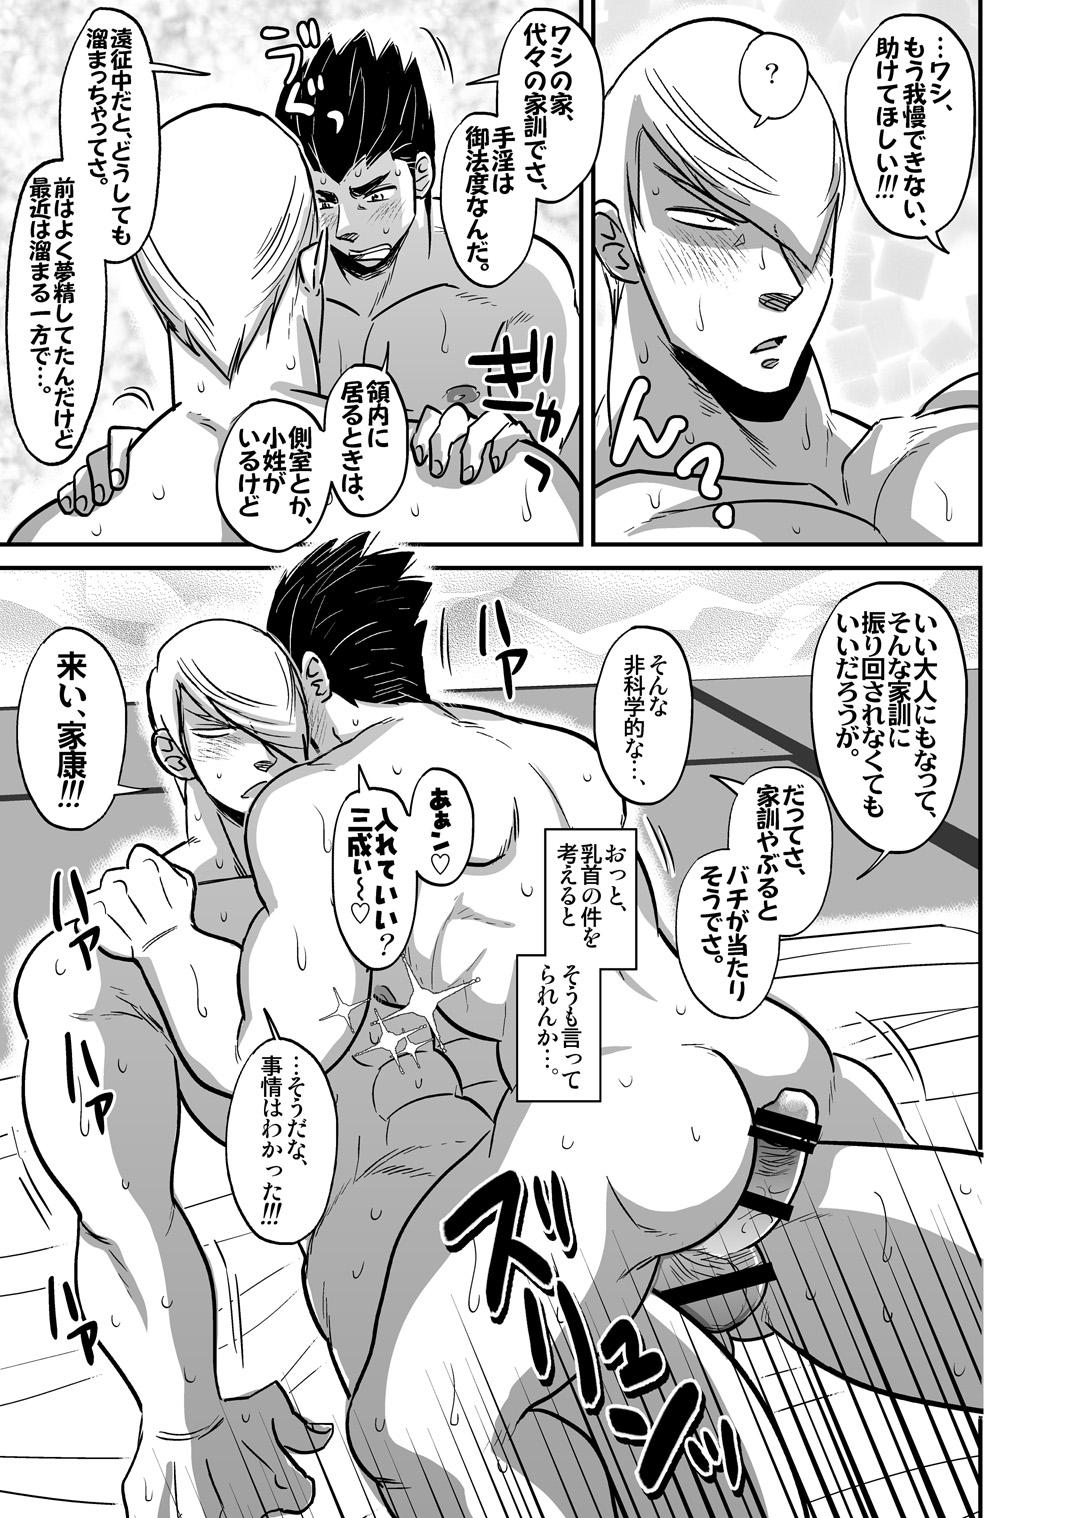 Fucking Hard Multi-HOMO manga at home - Sengoku basara Teenage - Page 10